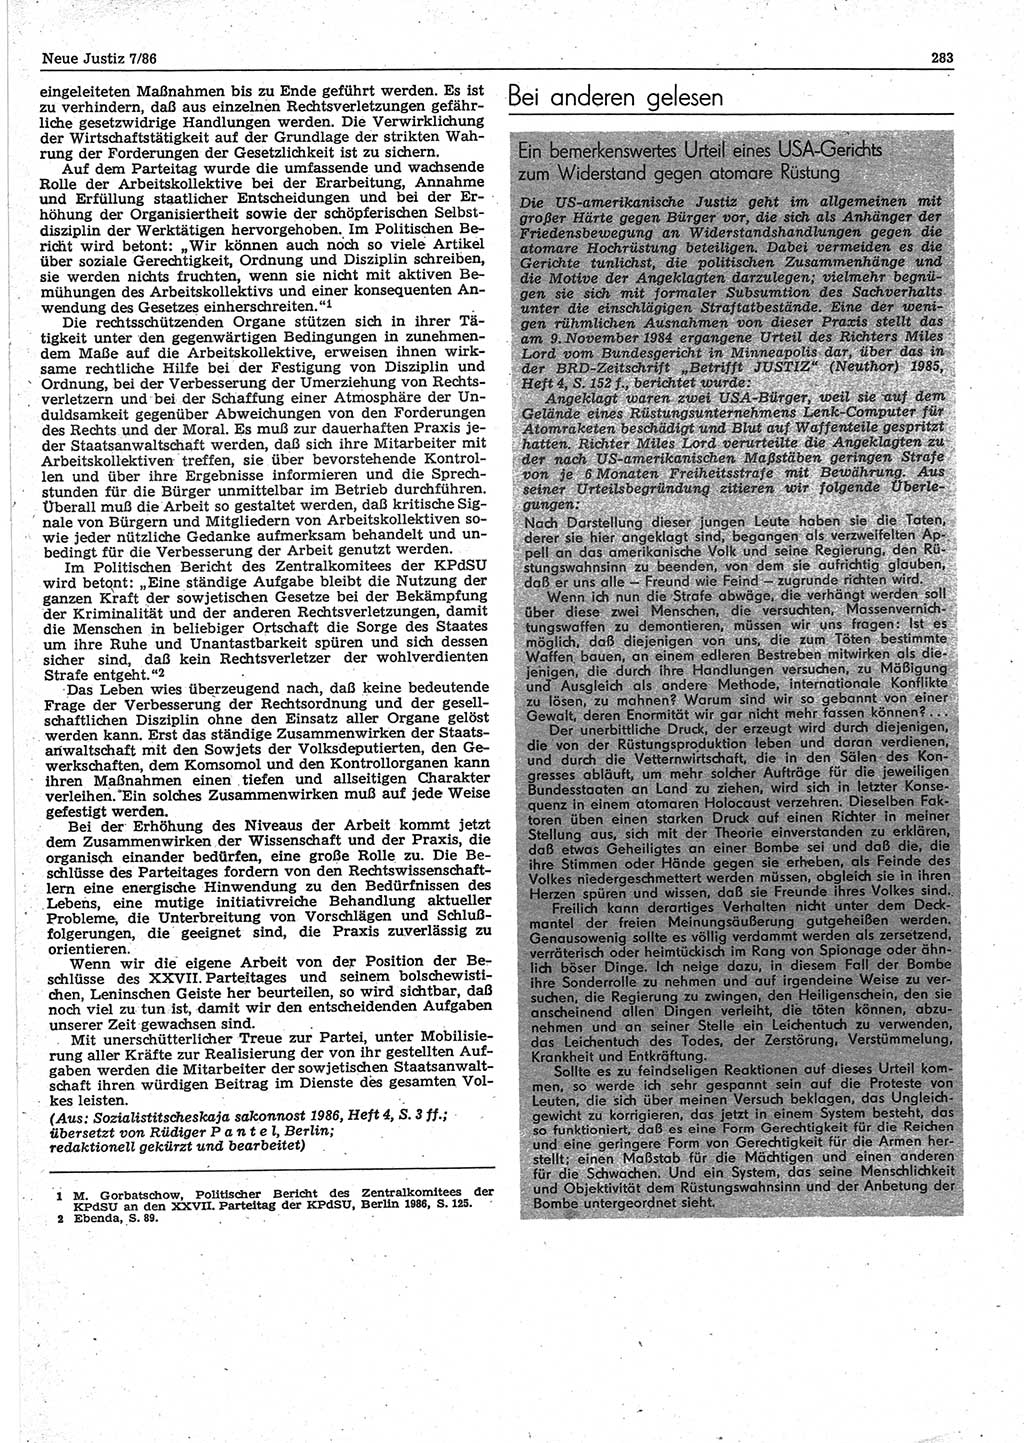 Neue Justiz (NJ), Zeitschrift für sozialistisches Recht und Gesetzlichkeit [Deutsche Demokratische Republik (DDR)], 40. Jahrgang 1986, Seite 283 (NJ DDR 1986, S. 283)